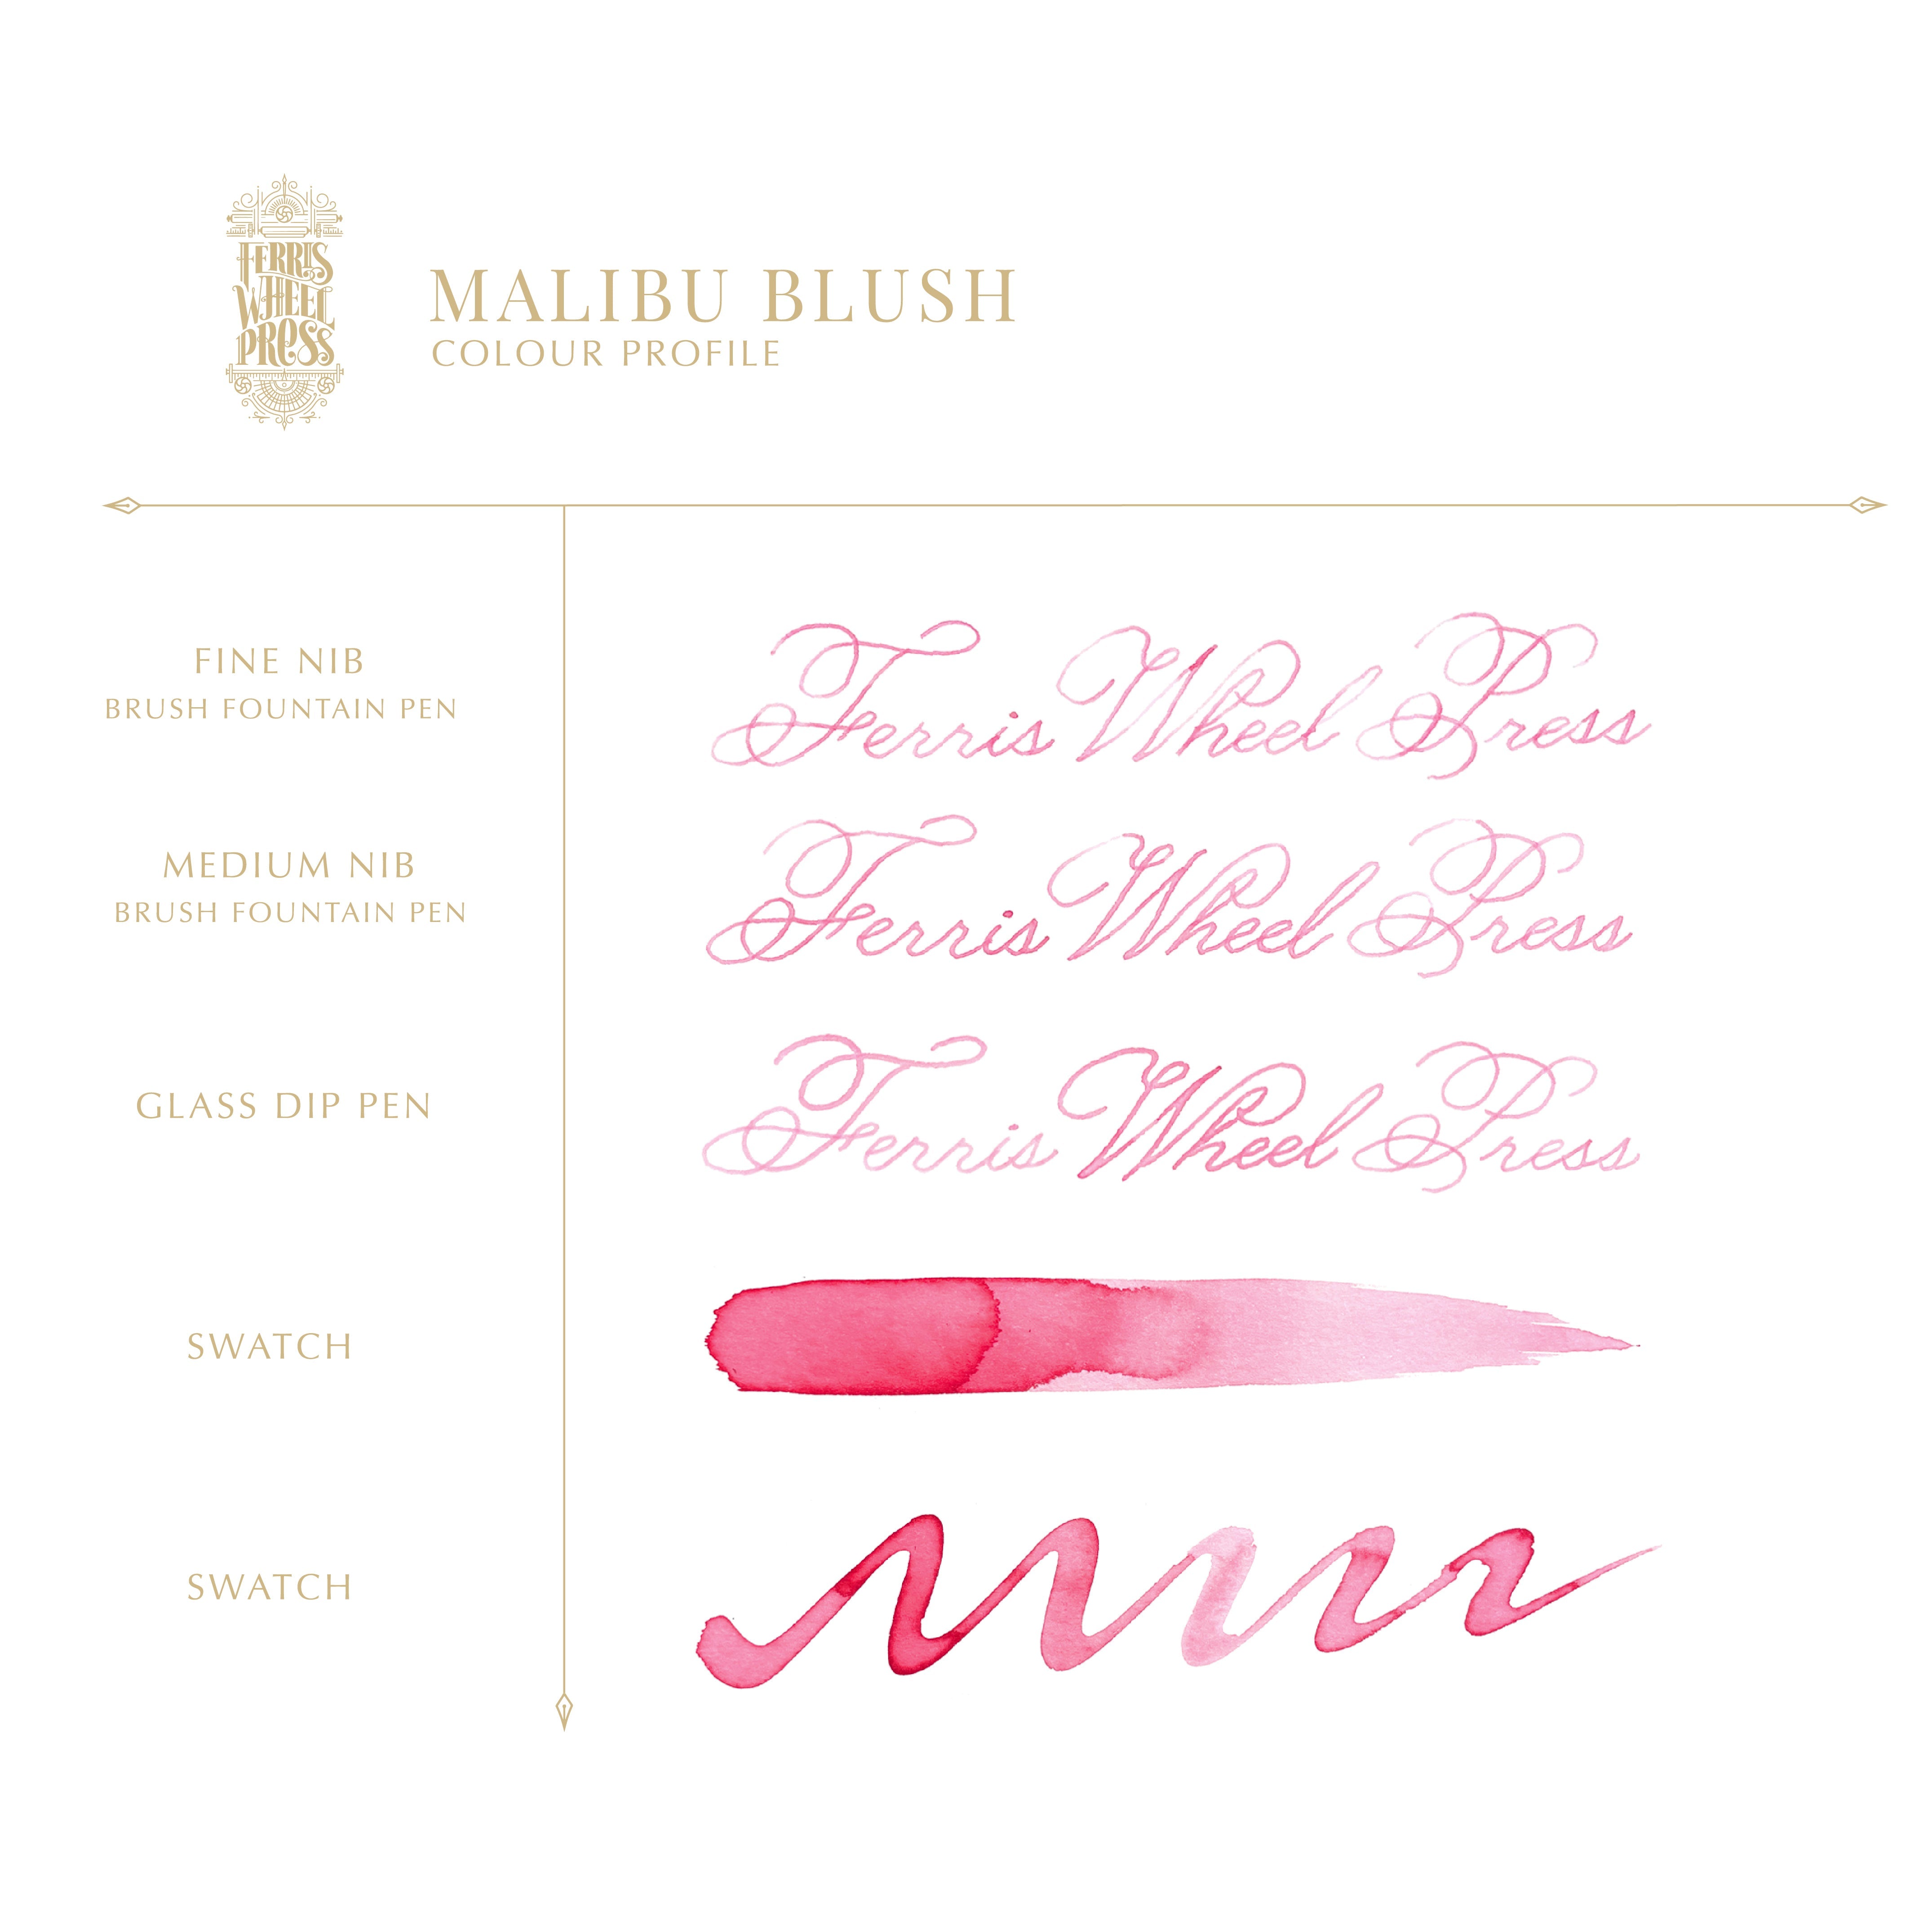 38ml Malibu Blush